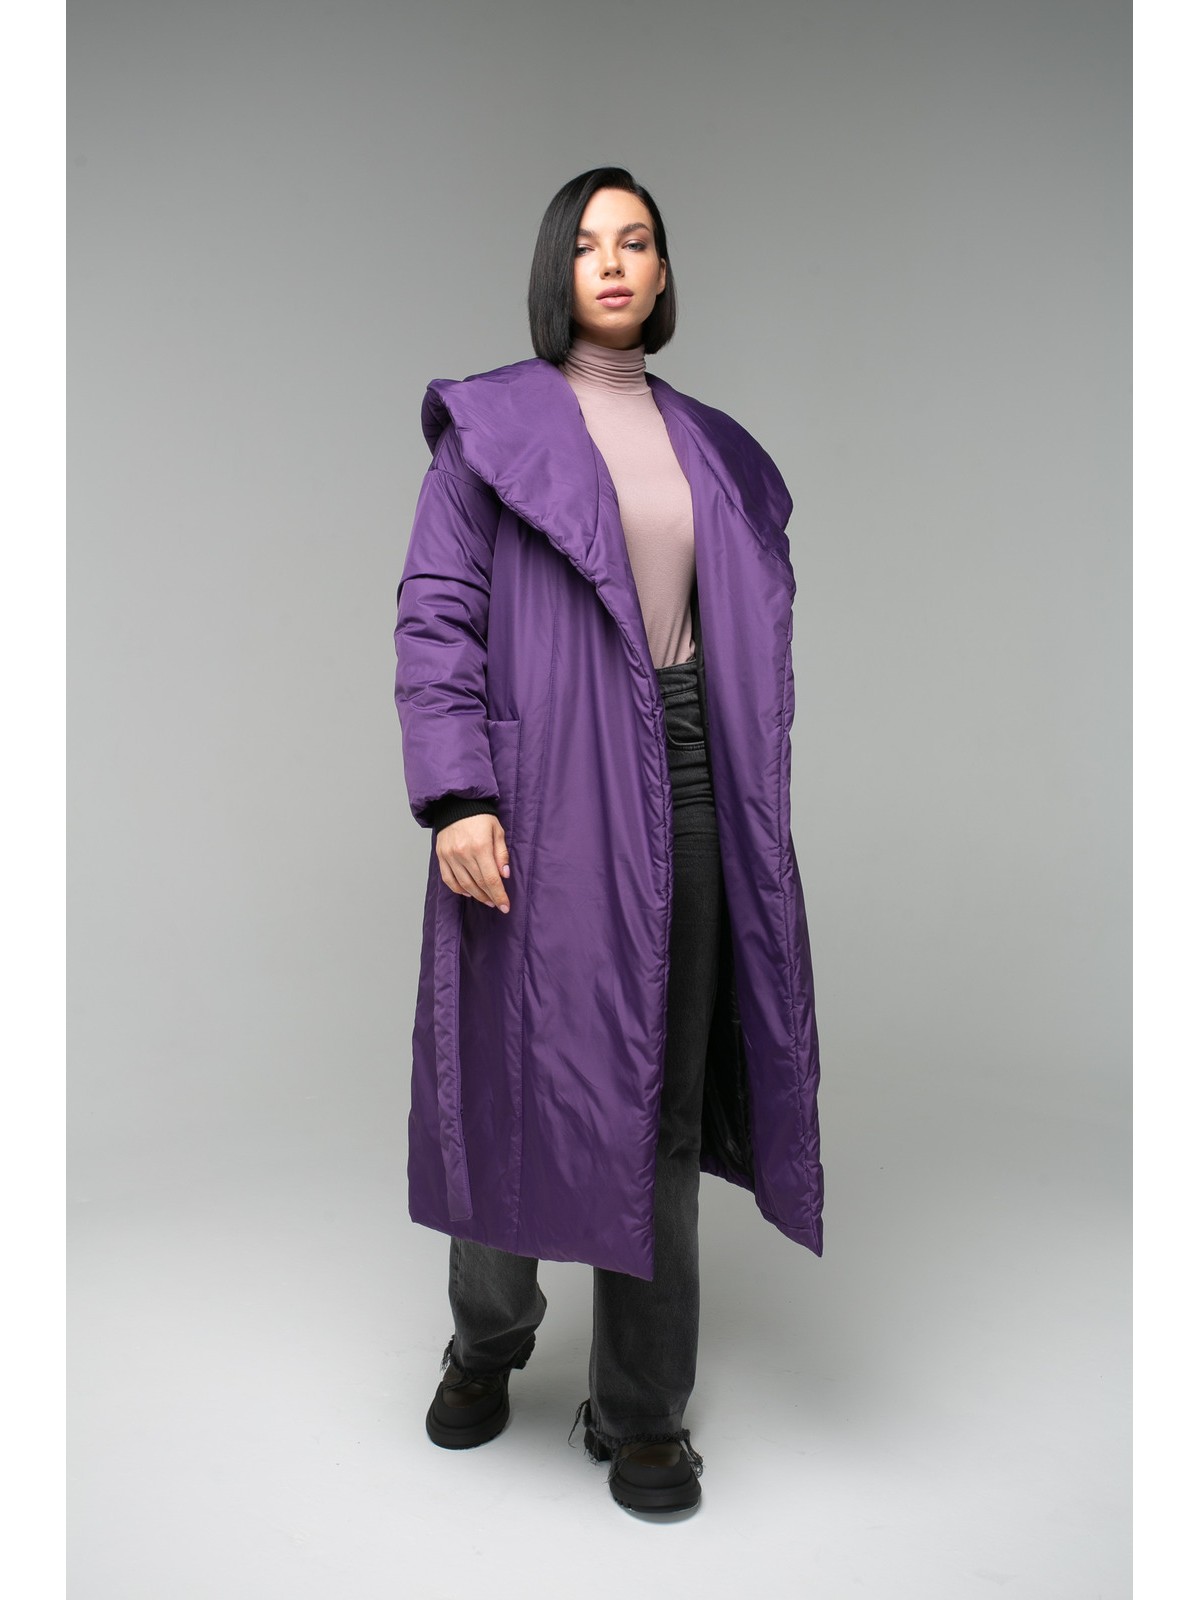 Пуховик-одеяло c капюшоном Dark Lilac (Фиолетовый)